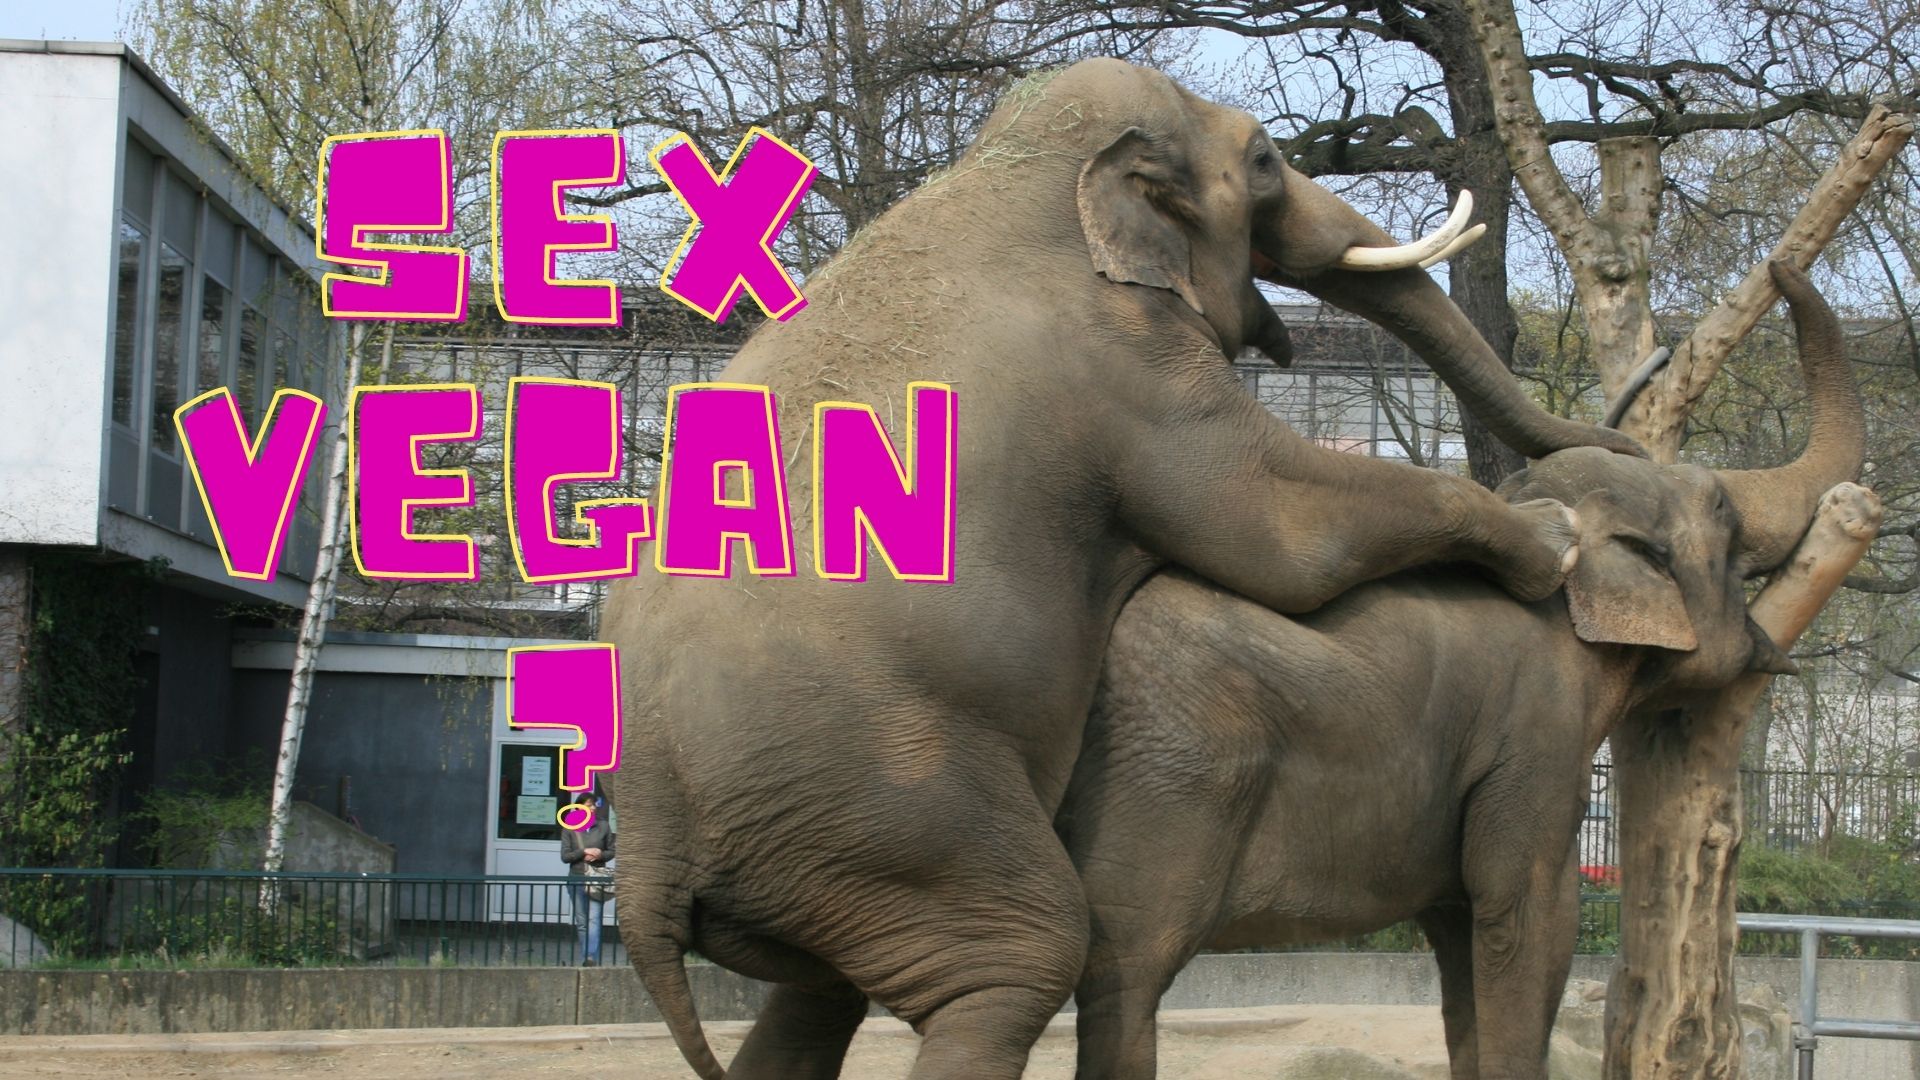 Veganer Sex Elefanten Zoo Kopulation